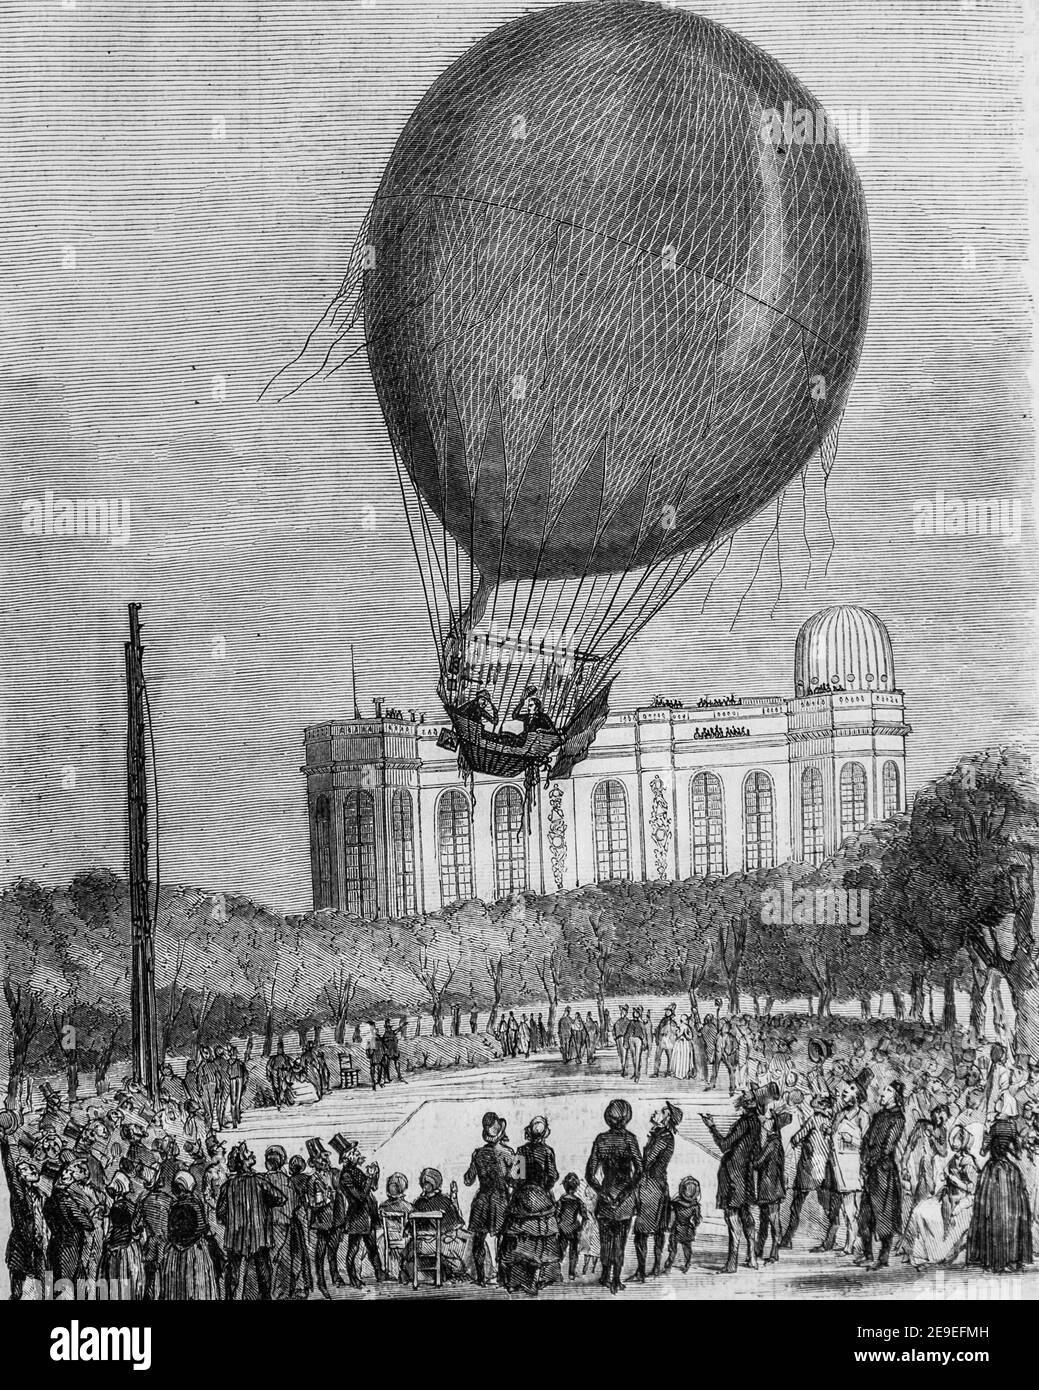 ascension de M.M. bixio et barral le 29 juin 18520, tableau de paris par edmond texier,editeur paulin et le chavalier 1853 Stockfoto